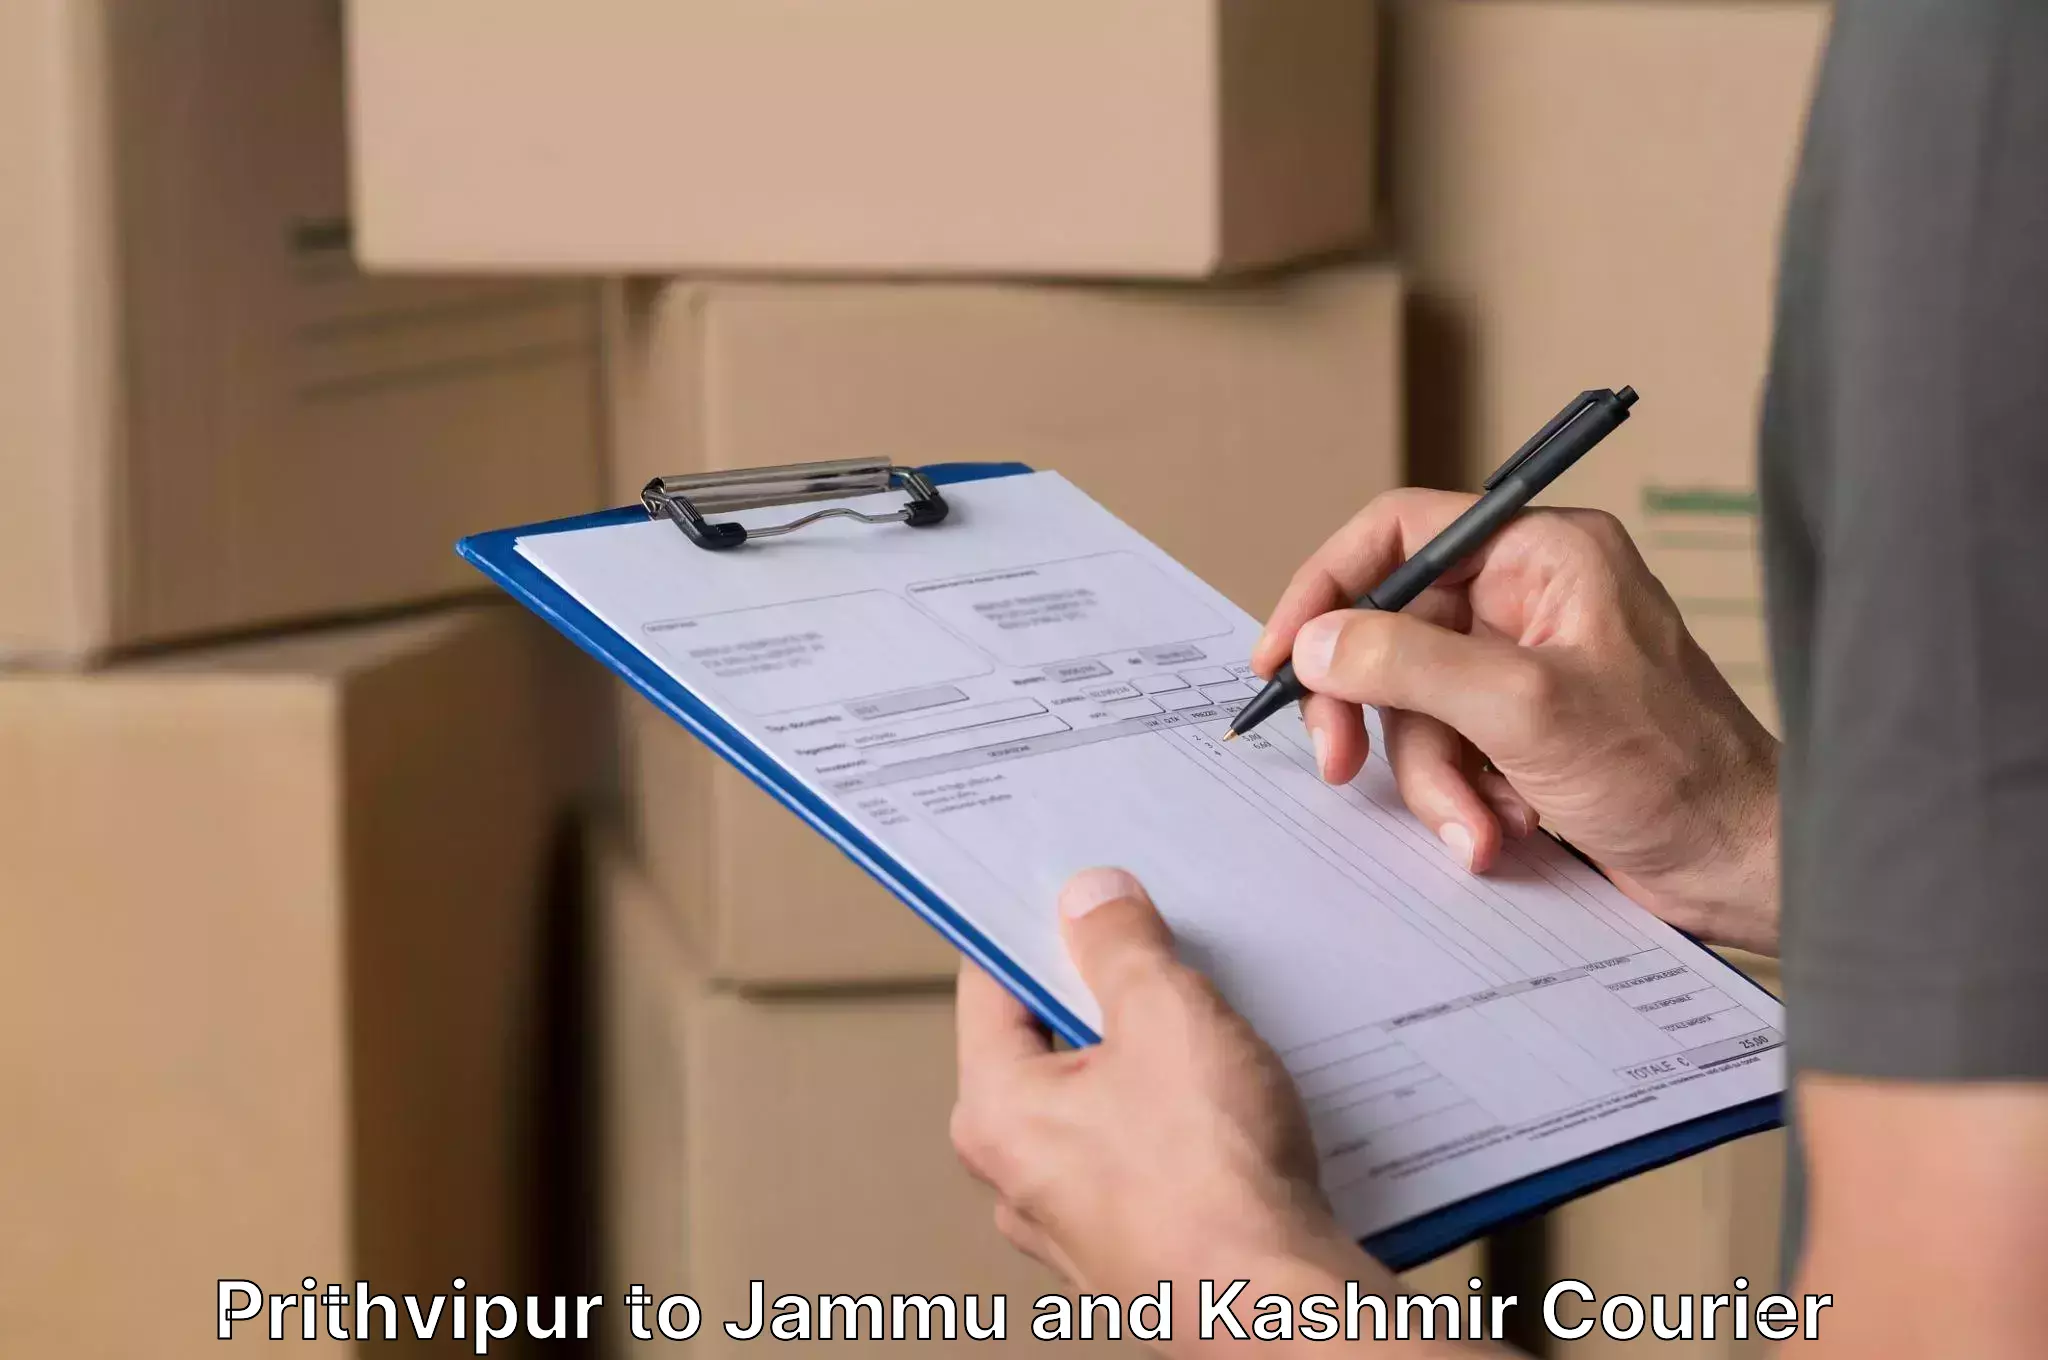 Furniture moving assistance Prithvipur to Srinagar Kashmir